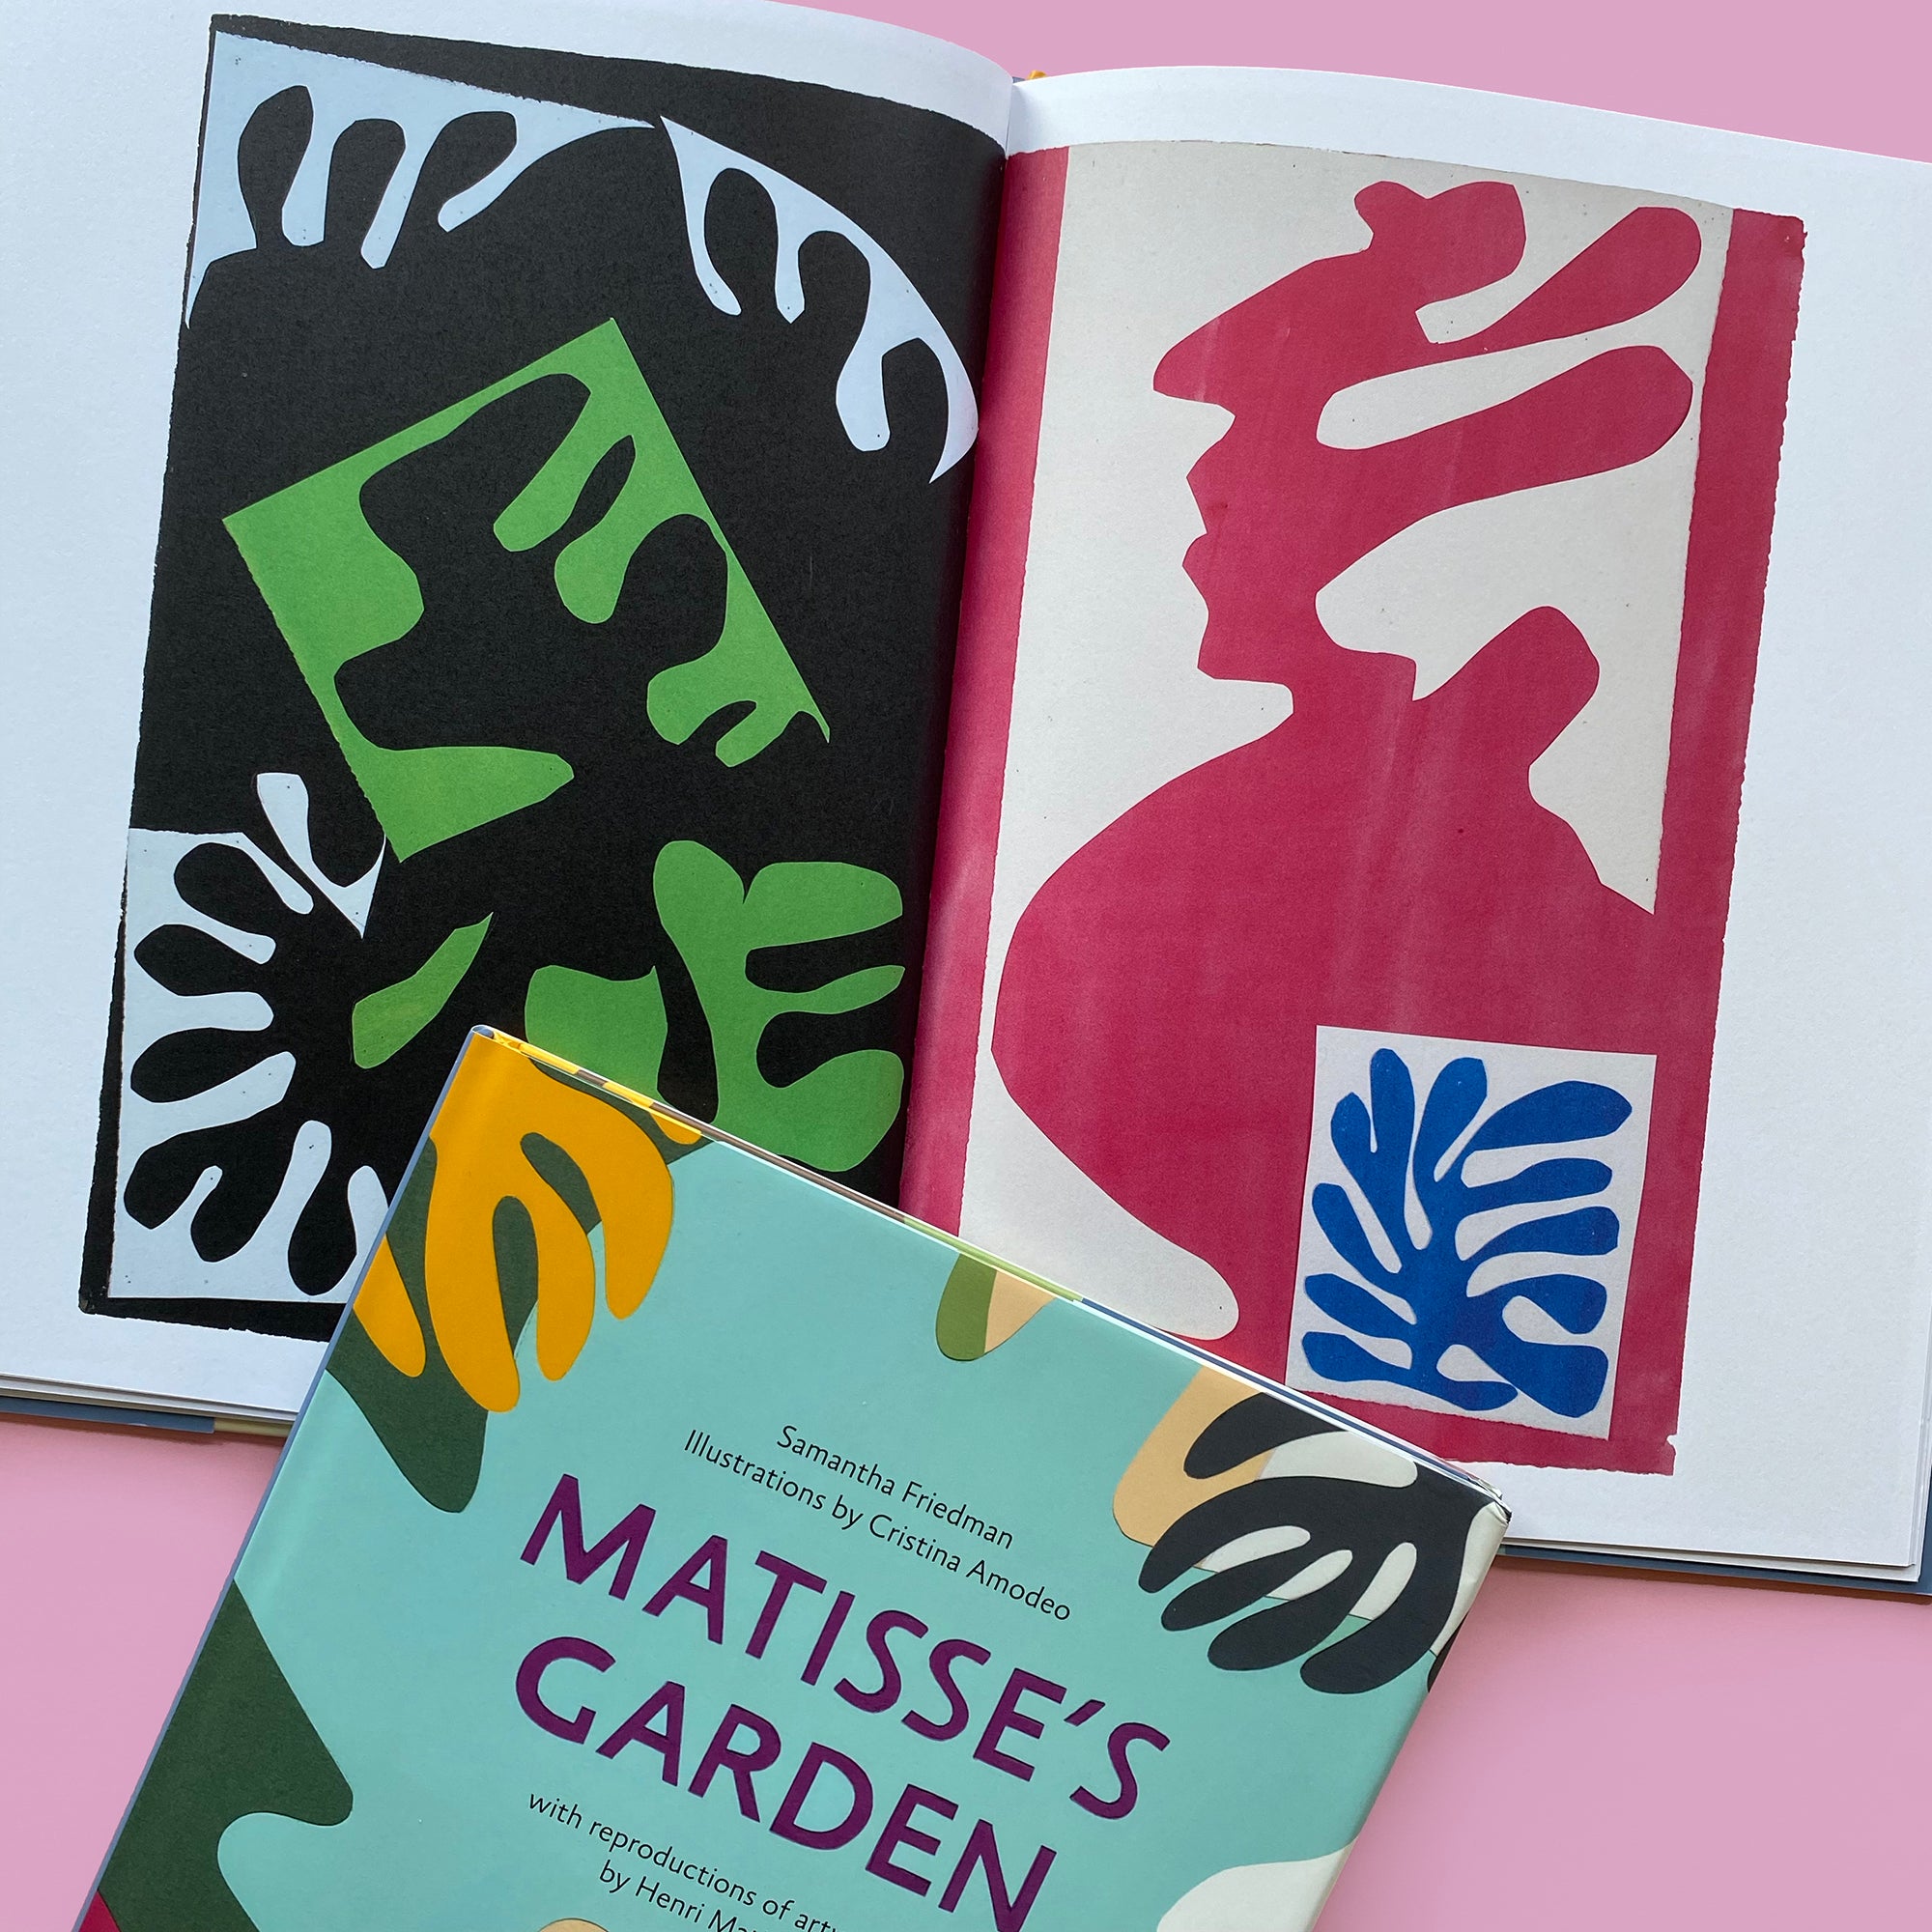 Matisse's Garden